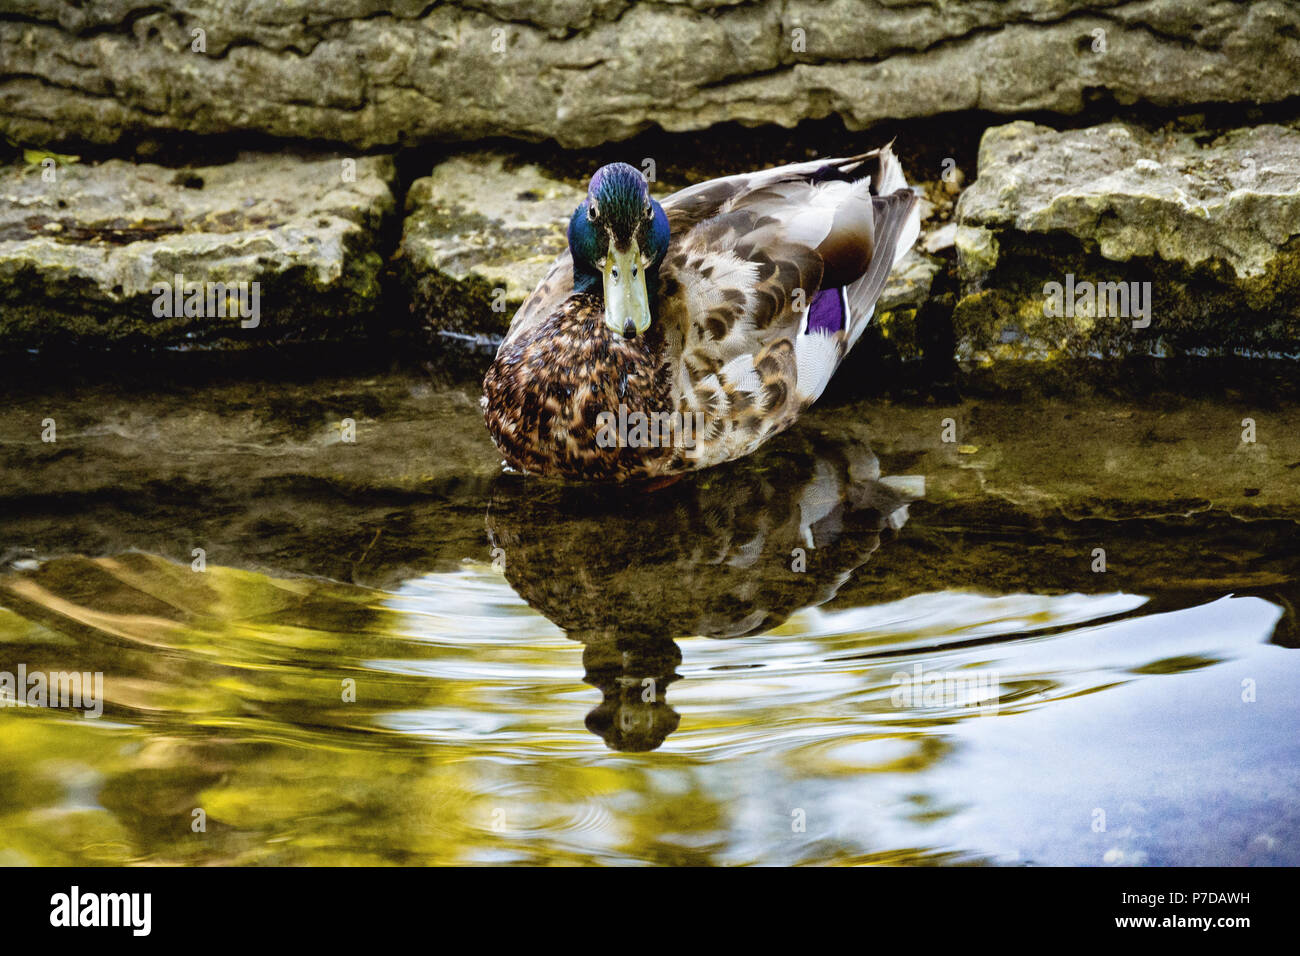 Maschio adulto Mallard duck in piscina in pietra, leggero ripple di acqua, lieve riflesso Foto Stock